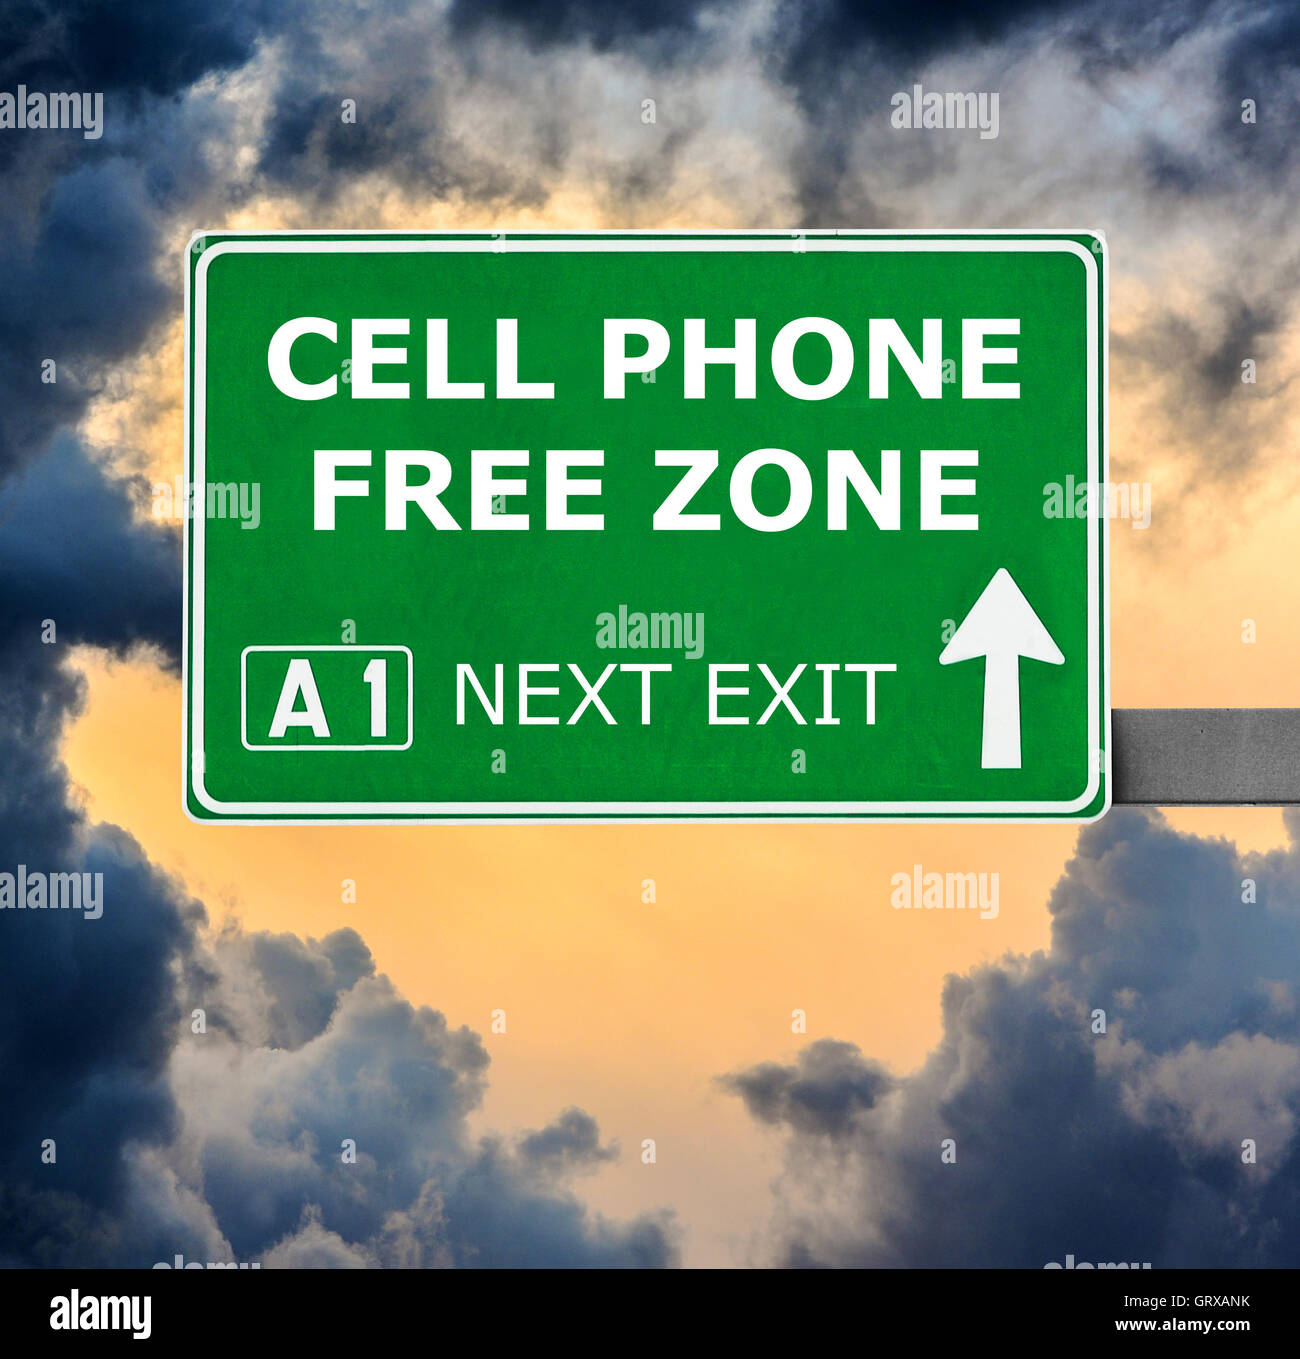 CELL PHONE FREE ZONE Straßenschild gegen klar blauen Himmel Stockfoto